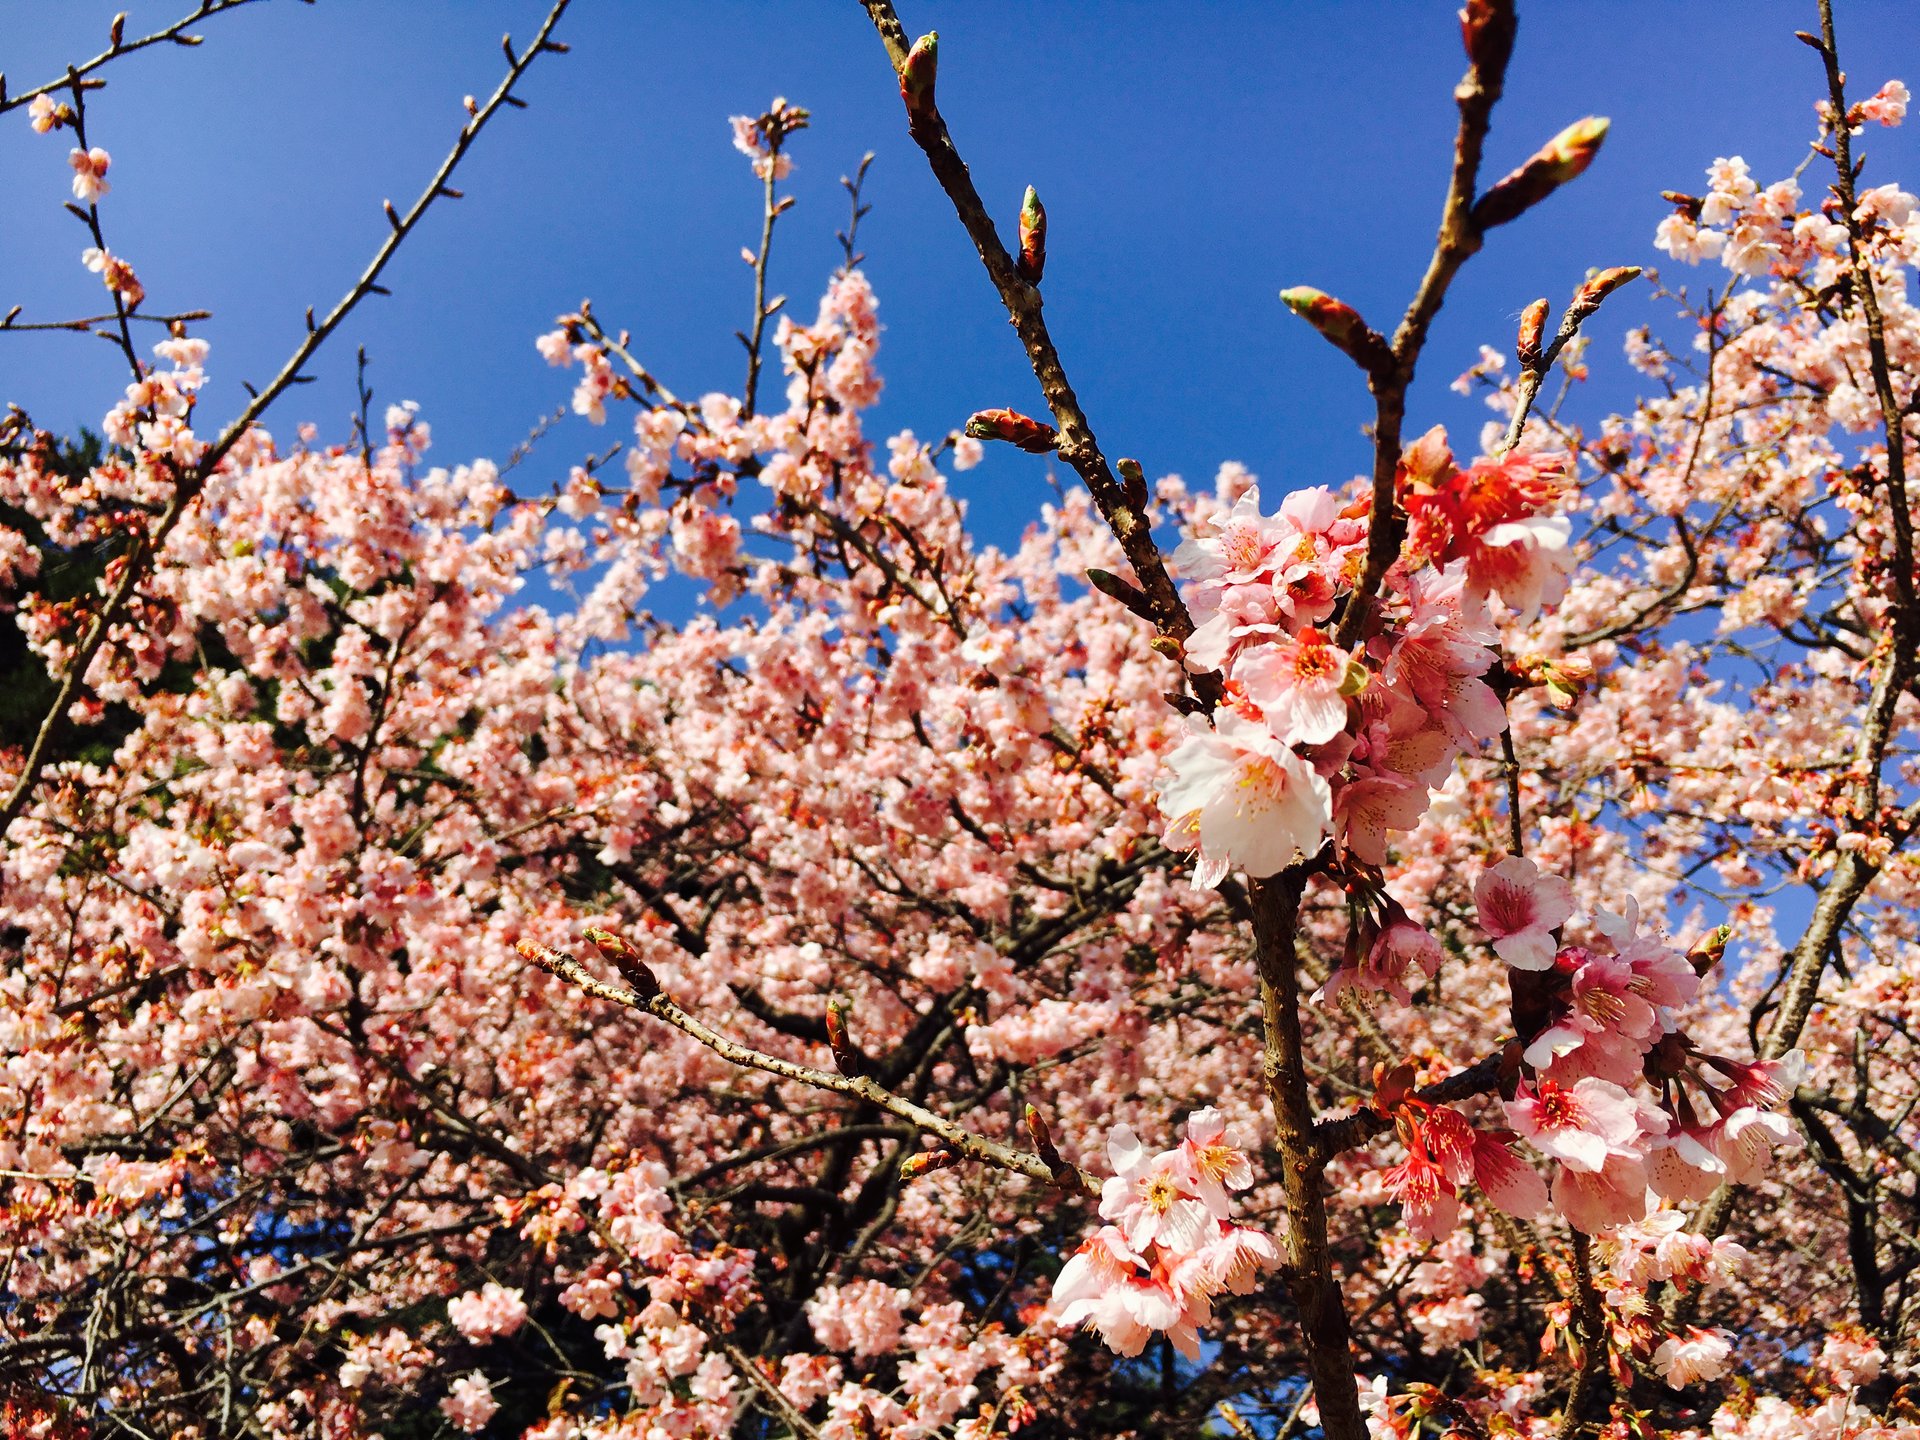 【一足先に、新宿で春。】満開の梅が非日常の癒しを与えてくれる、都会のオアシス『新宿御苑』